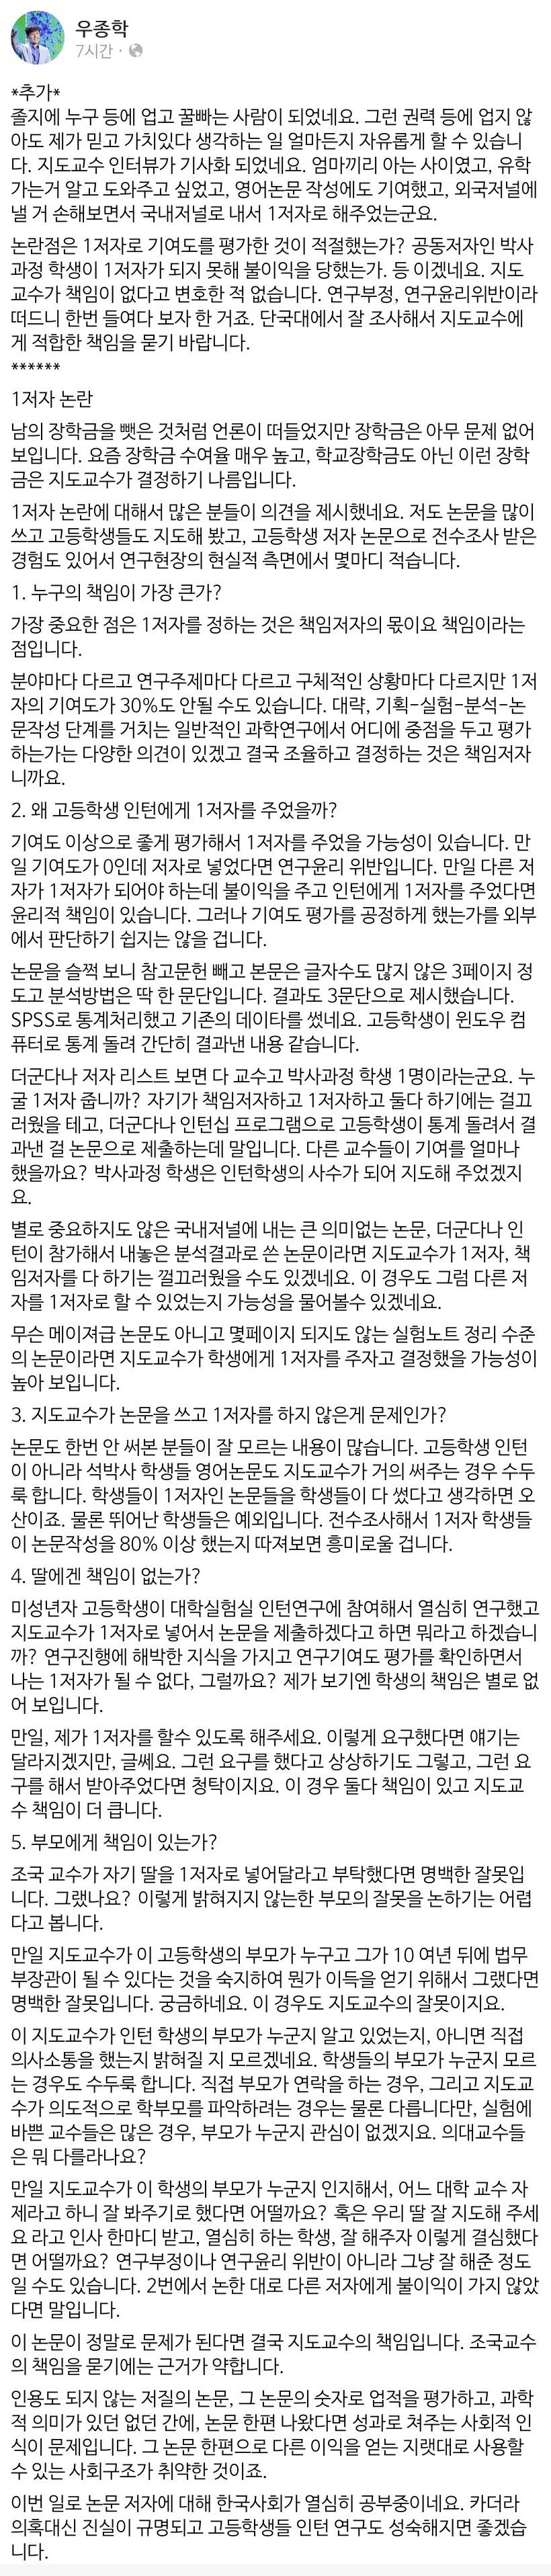 서울대 우종학 교수 페이스북 - 조국 딸 논문 관련 | 인스티즈